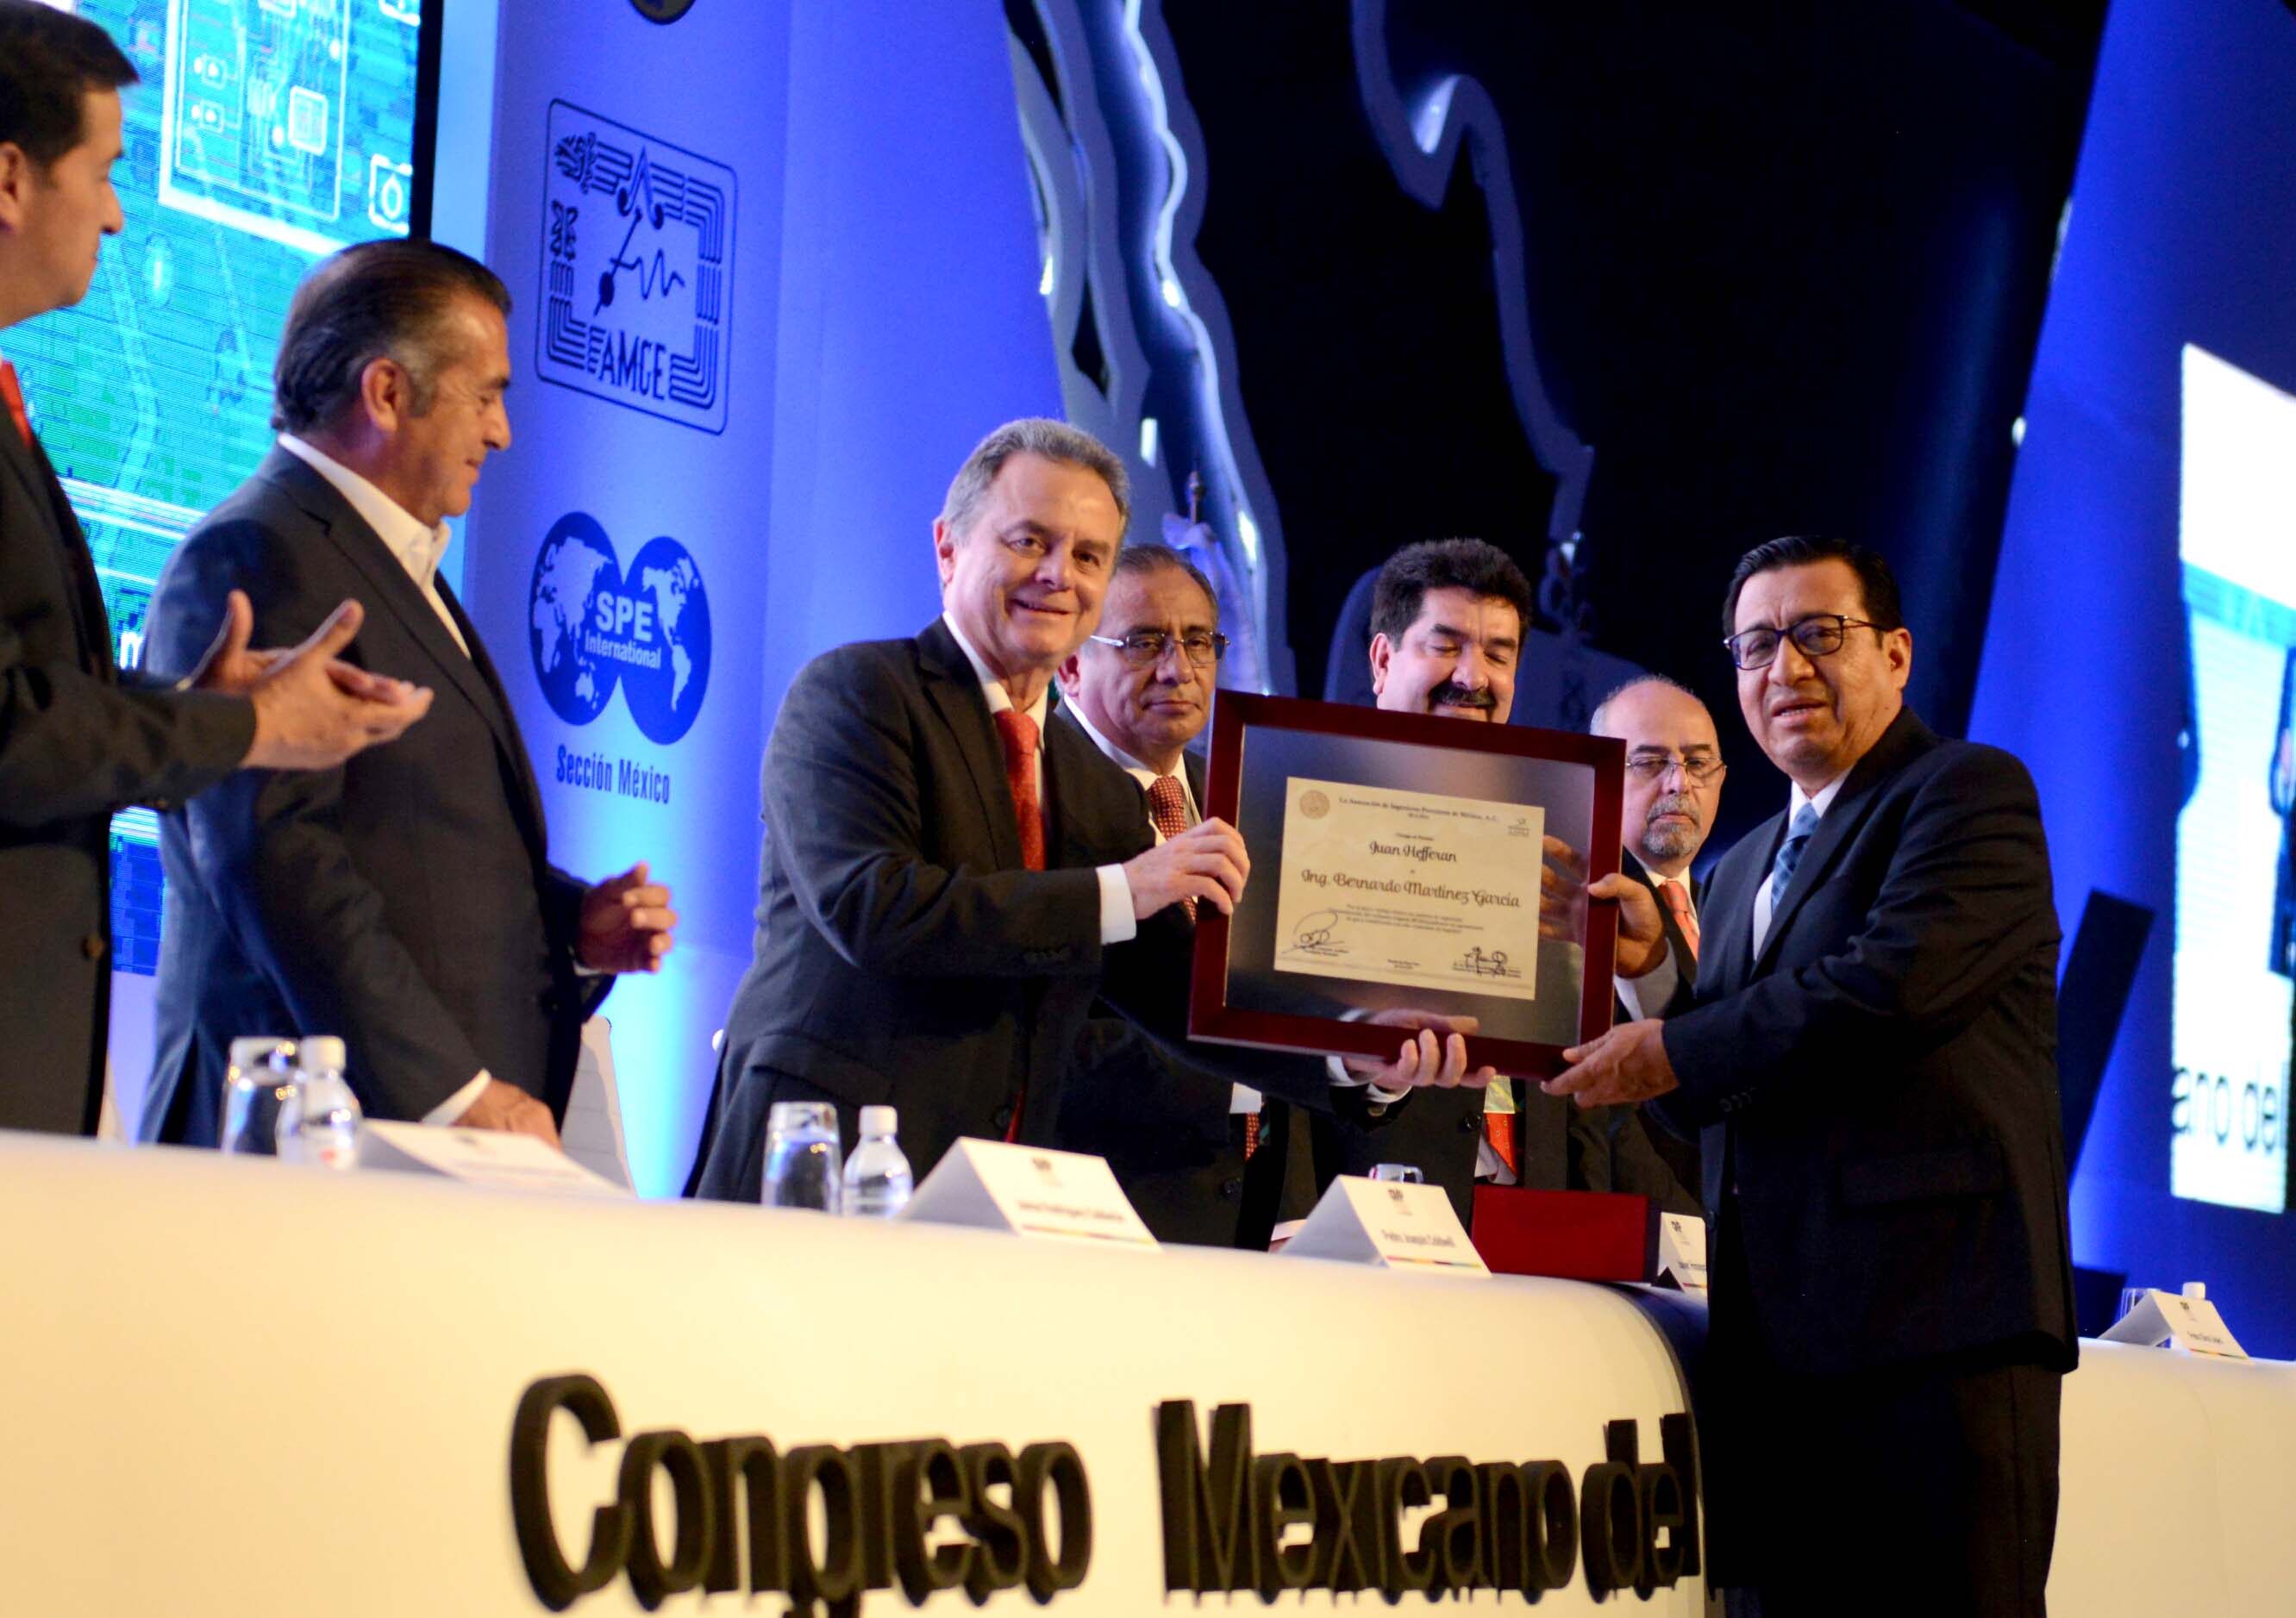 El Secretario de Energía, Licenciado Pedro Joaquín Coldwell, encabezó la inauguración del Congreso Mexicano de Petróleo 2016, estuvo acompañado del Gobernador de Nuevo León, Jaime Rodríguez Calderón.